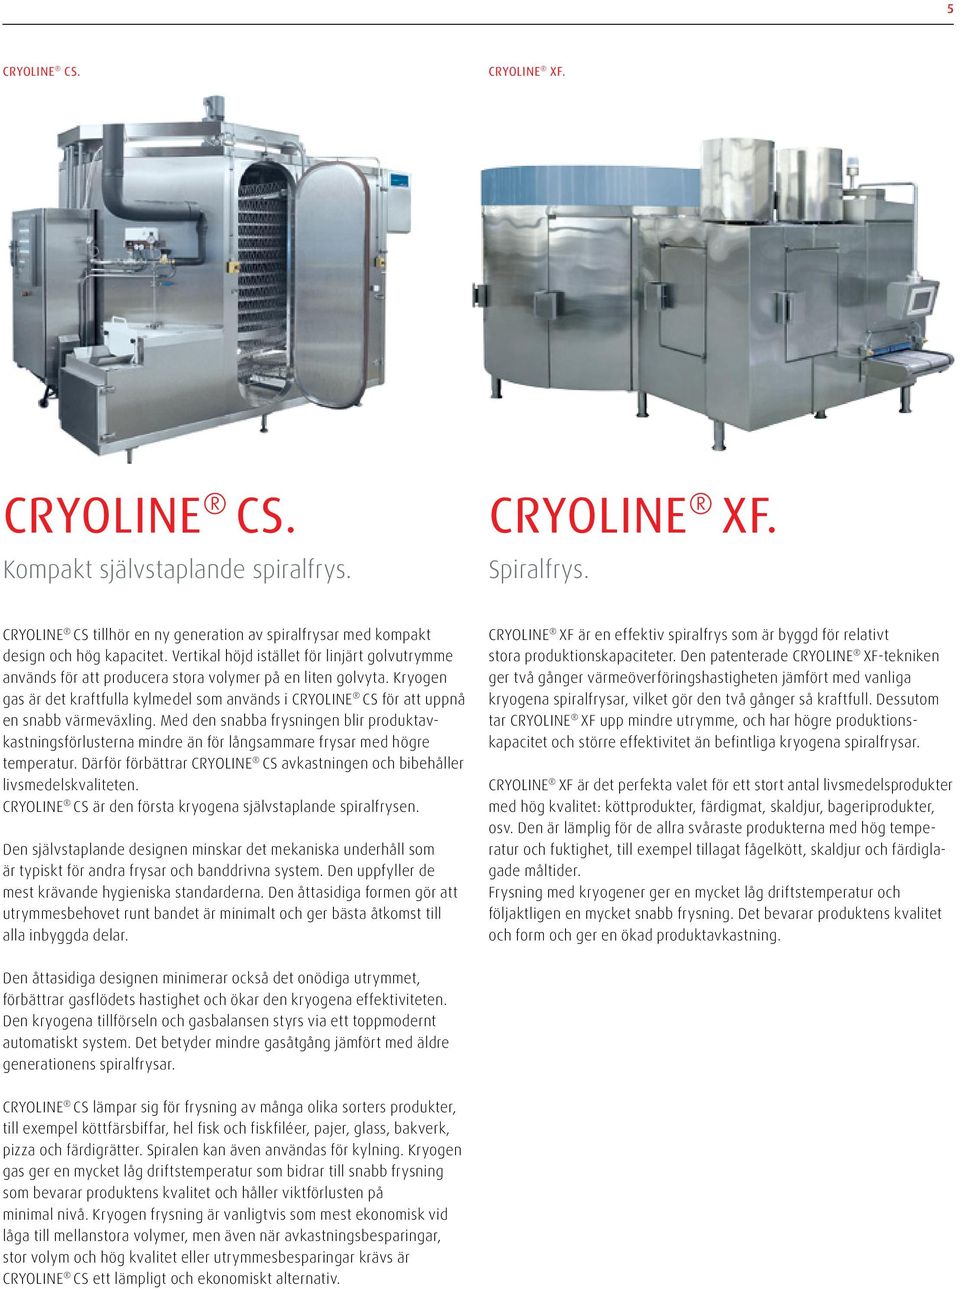 Kryogen gas är det kraftfulla kylmedel som används i CRYOLINE CS för att uppnå en snabb värmeväxling.